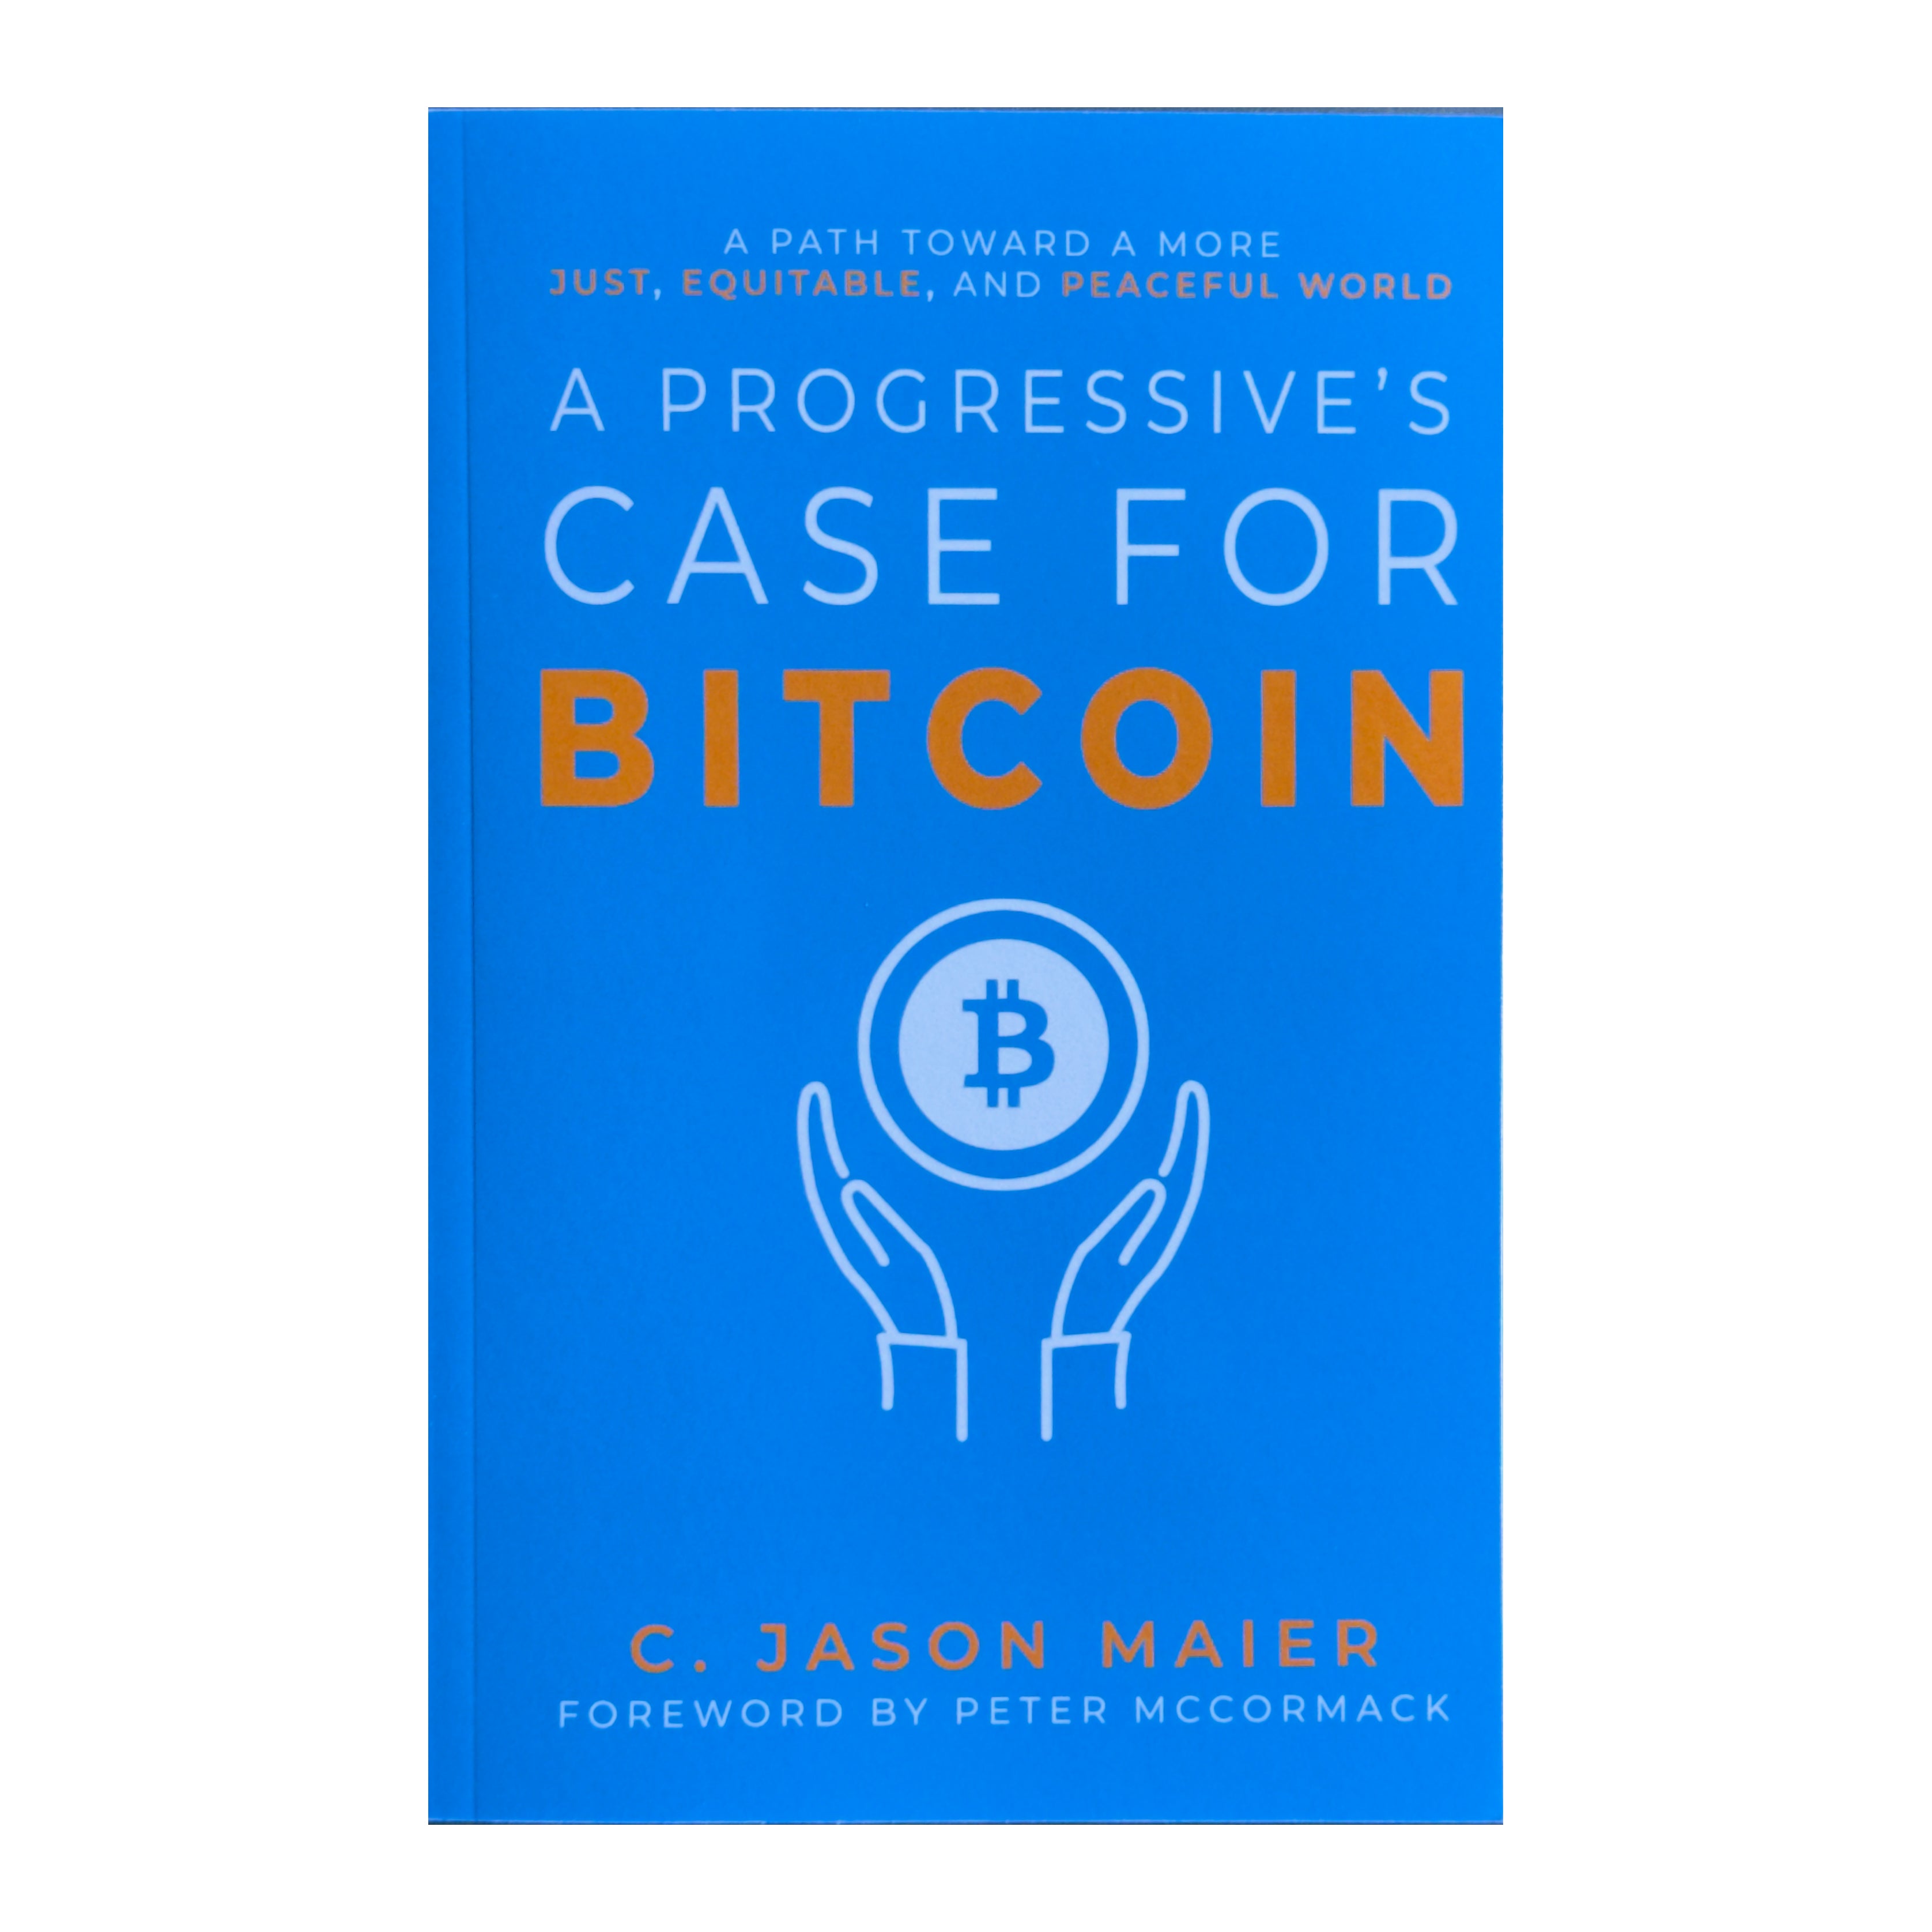 A Progressive's Case For Bitcoin - Bitcoin Magazine